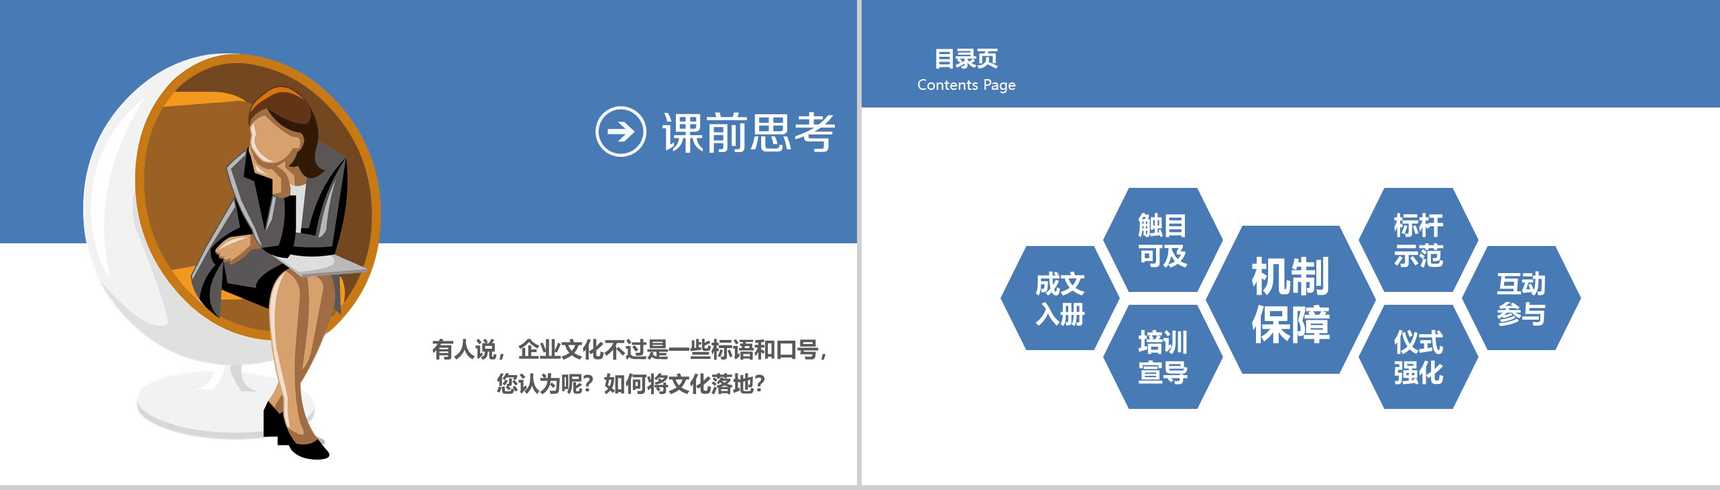 蓝色企业文化管理活动理念分析商务公司简介演讲PPT模板-2